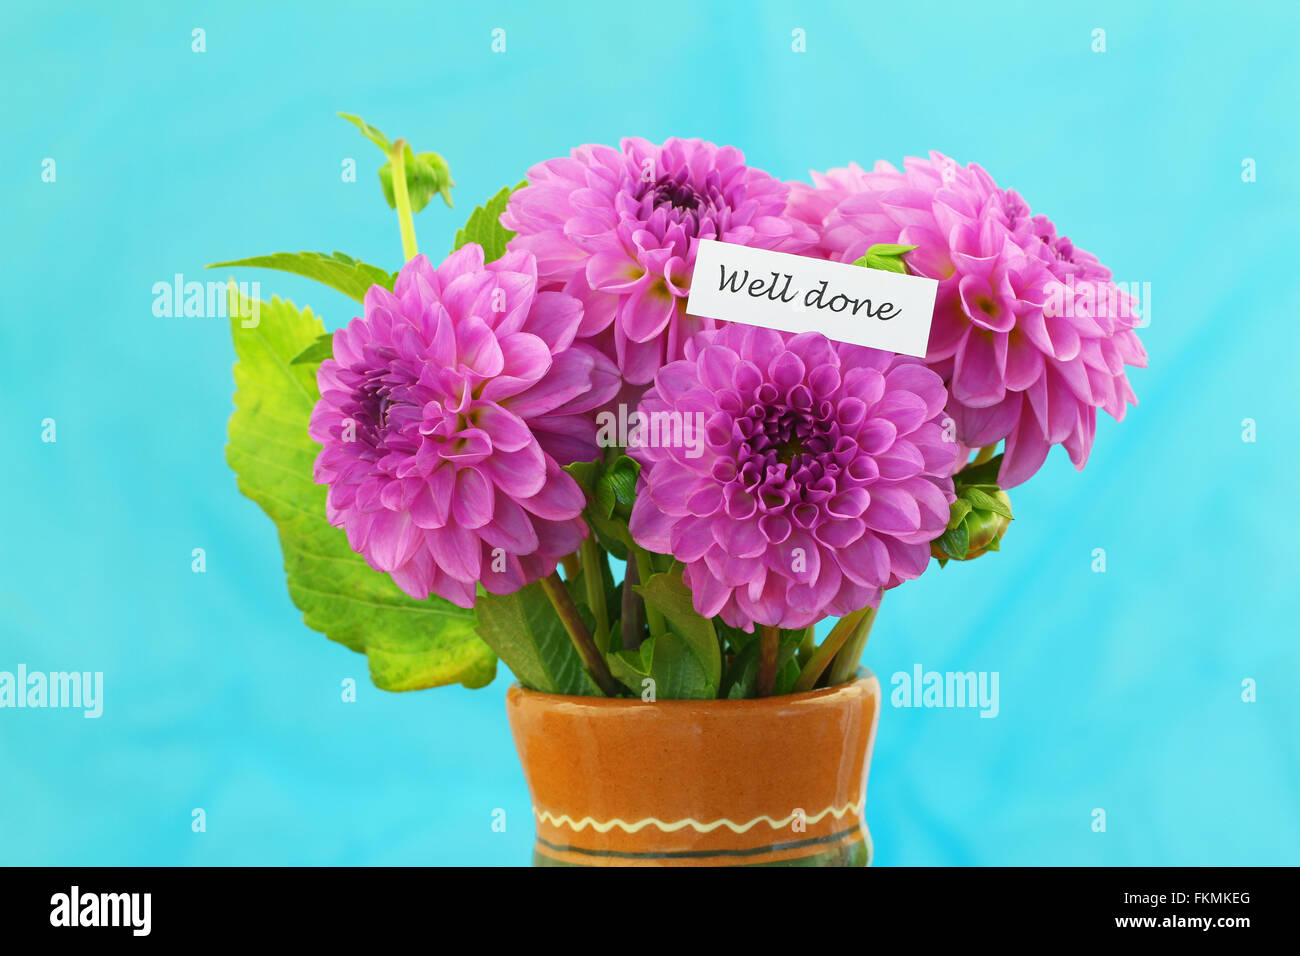 Bien fait avec des fleurs dahlia rose carte sur fond bleu Banque D'Images